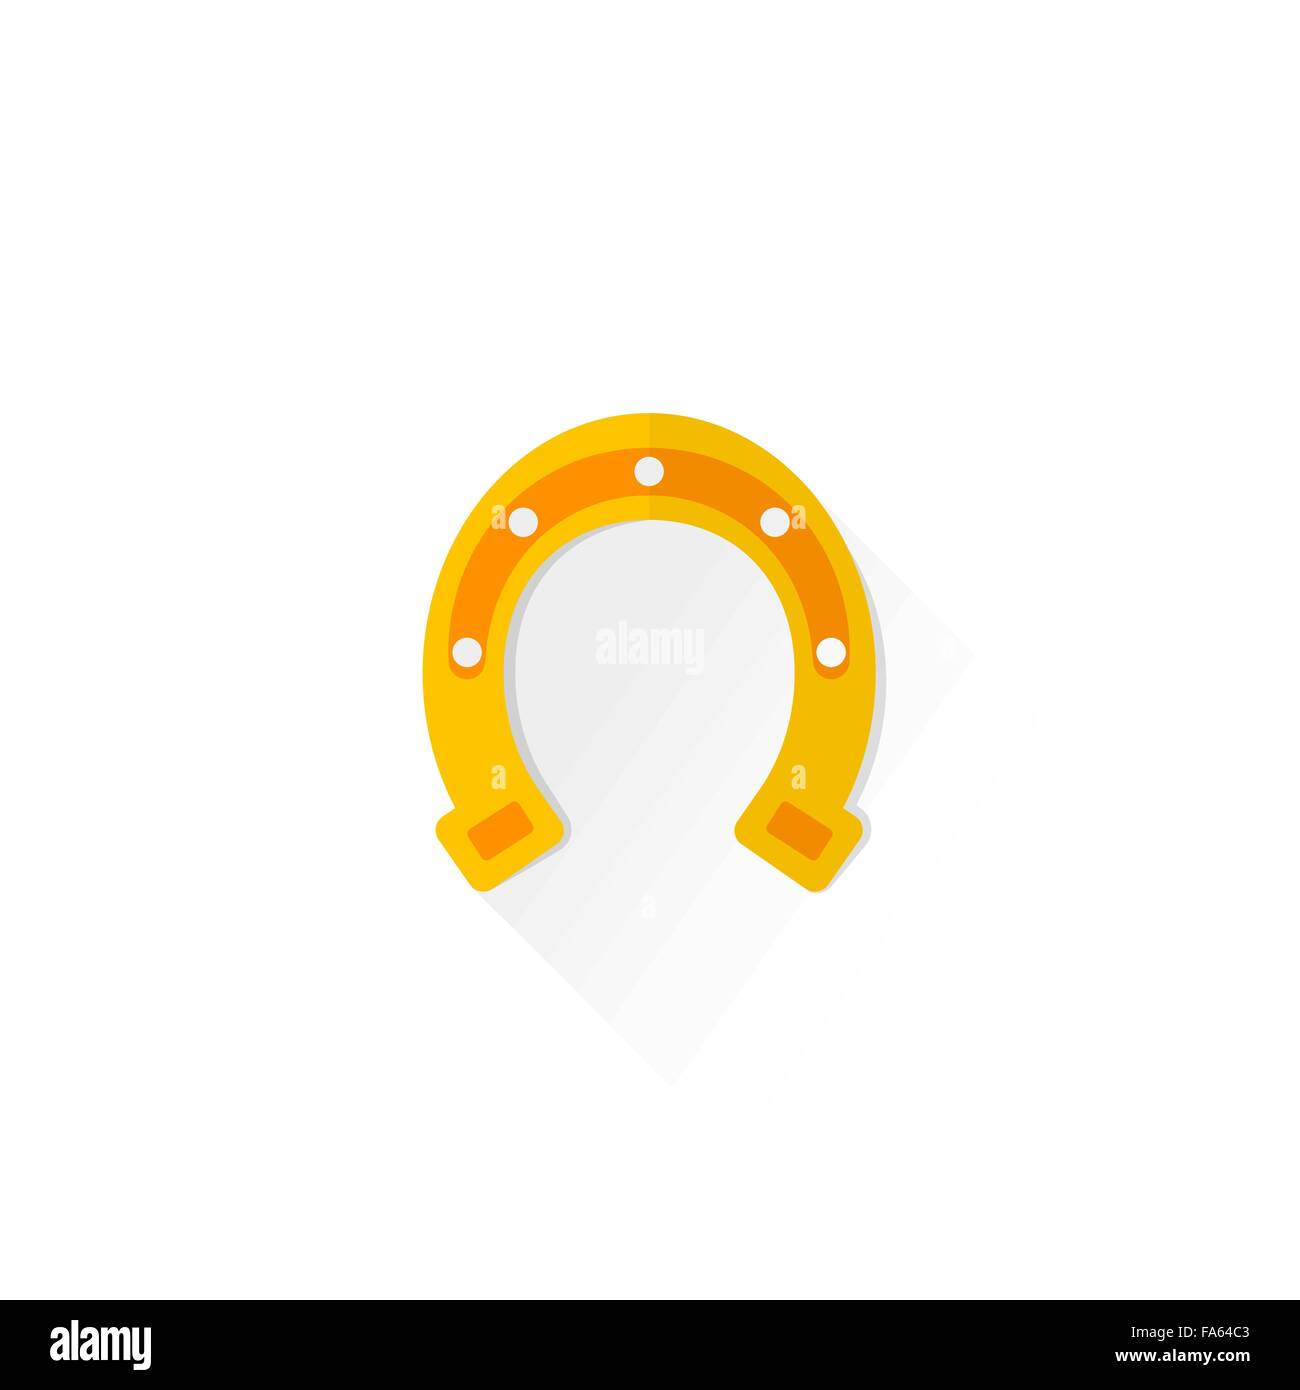 Vector yellow gold diseño plano color herradura signo afortunado ilustración aislada sobre fondo blanco con sombra Ilustración del Vector